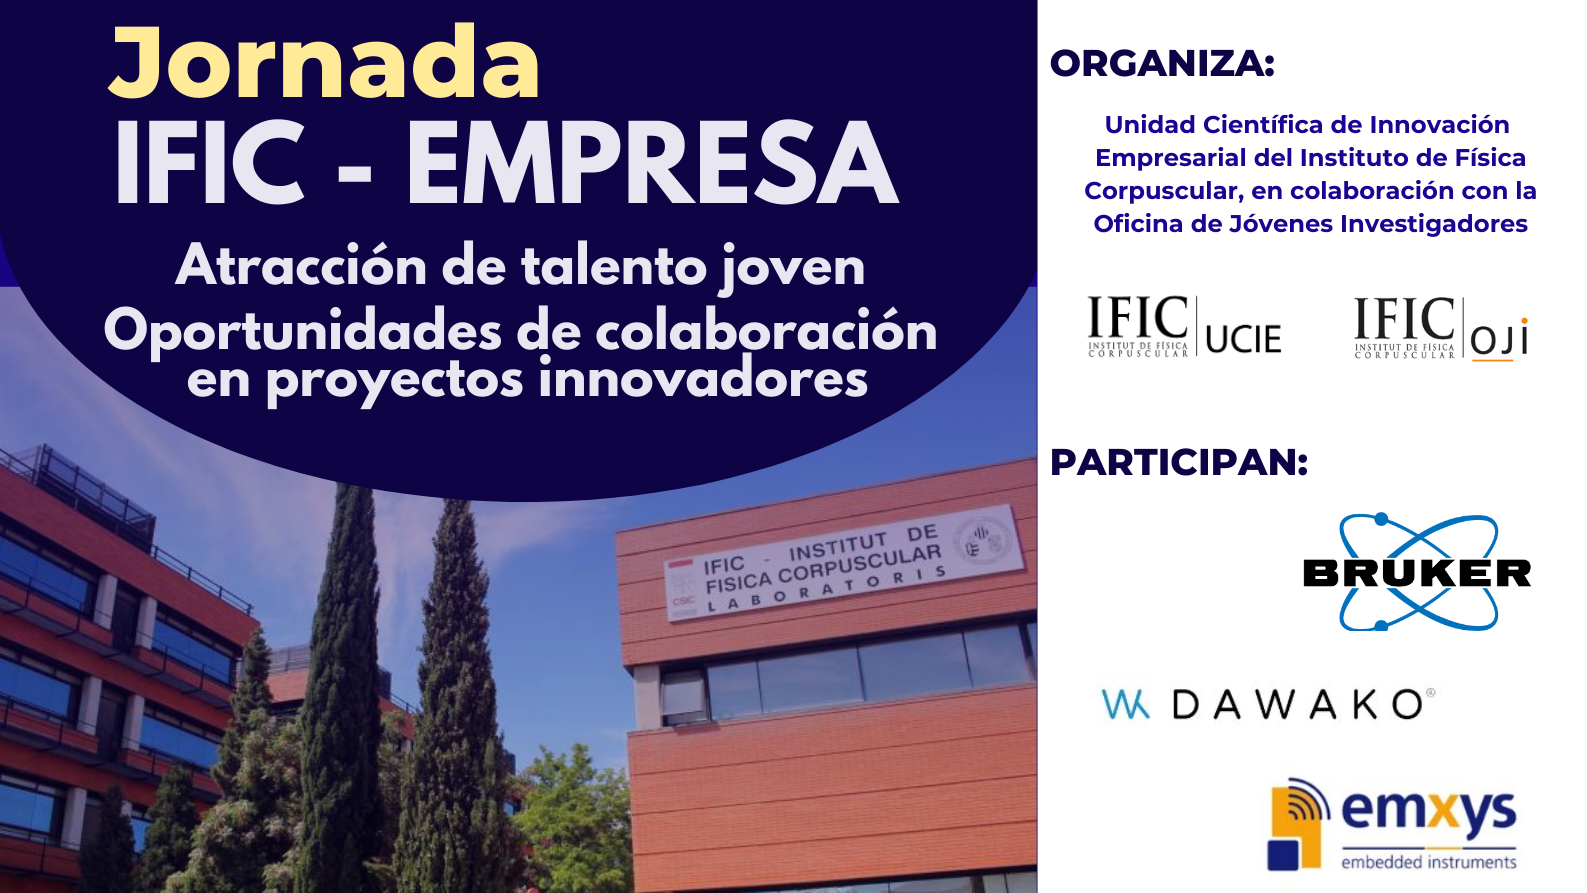 IFIC | Jornada IFIC - Empresa: Atracción de talento joven y oportunidades de colaboración en proyectos innovadores